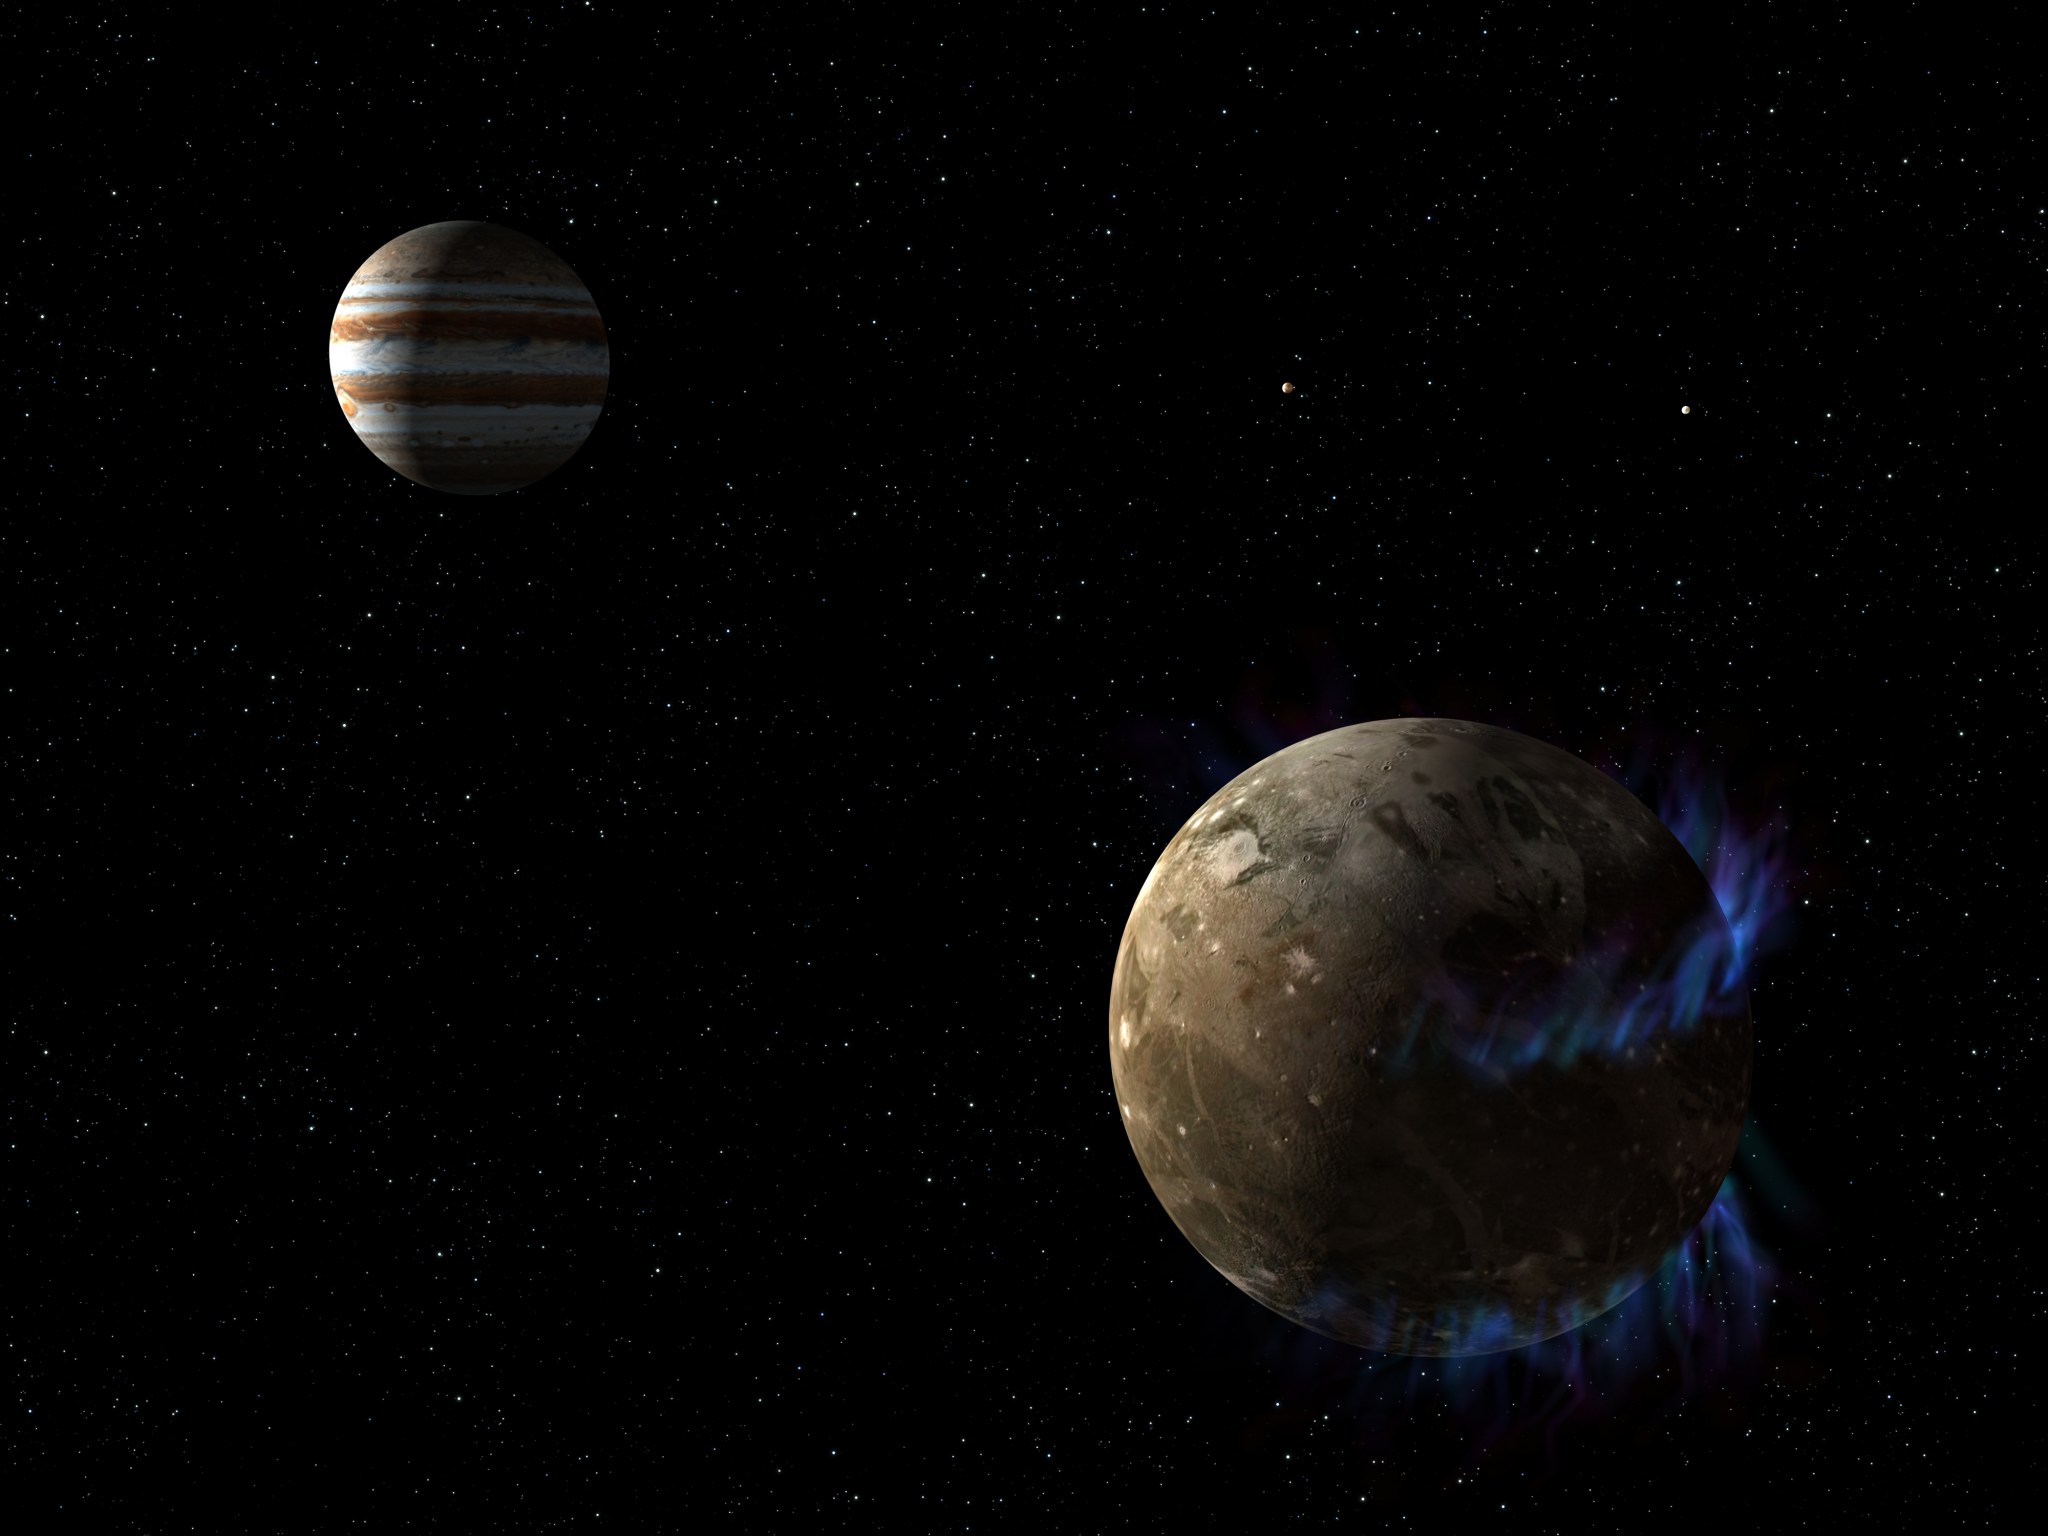 Artist concept of Ganymede and Jupiter